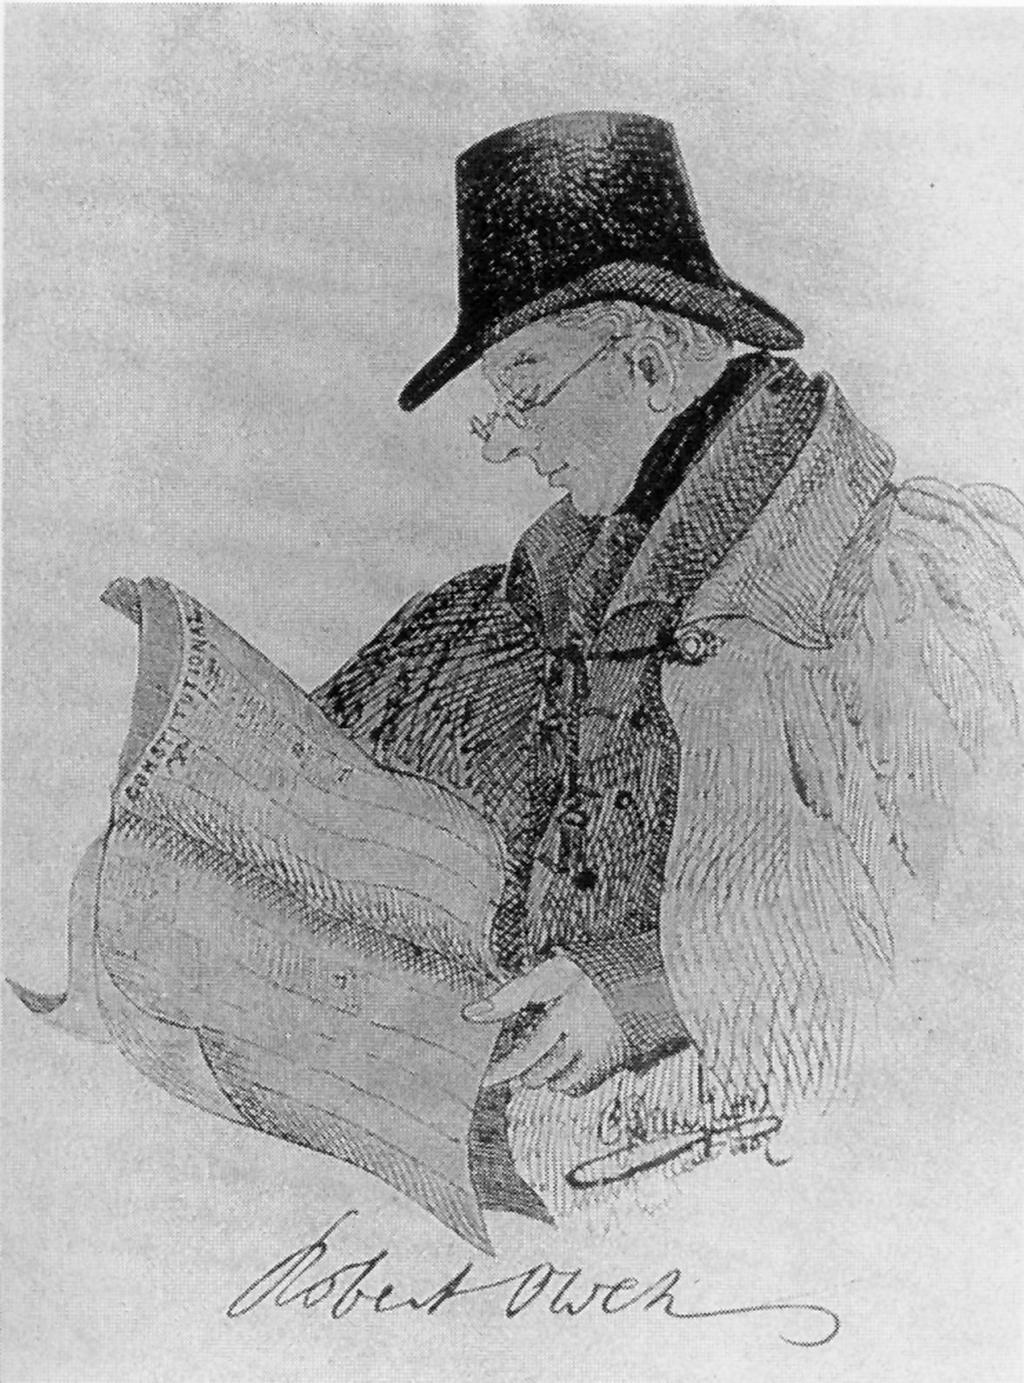 Robert Owen (1771-1858)